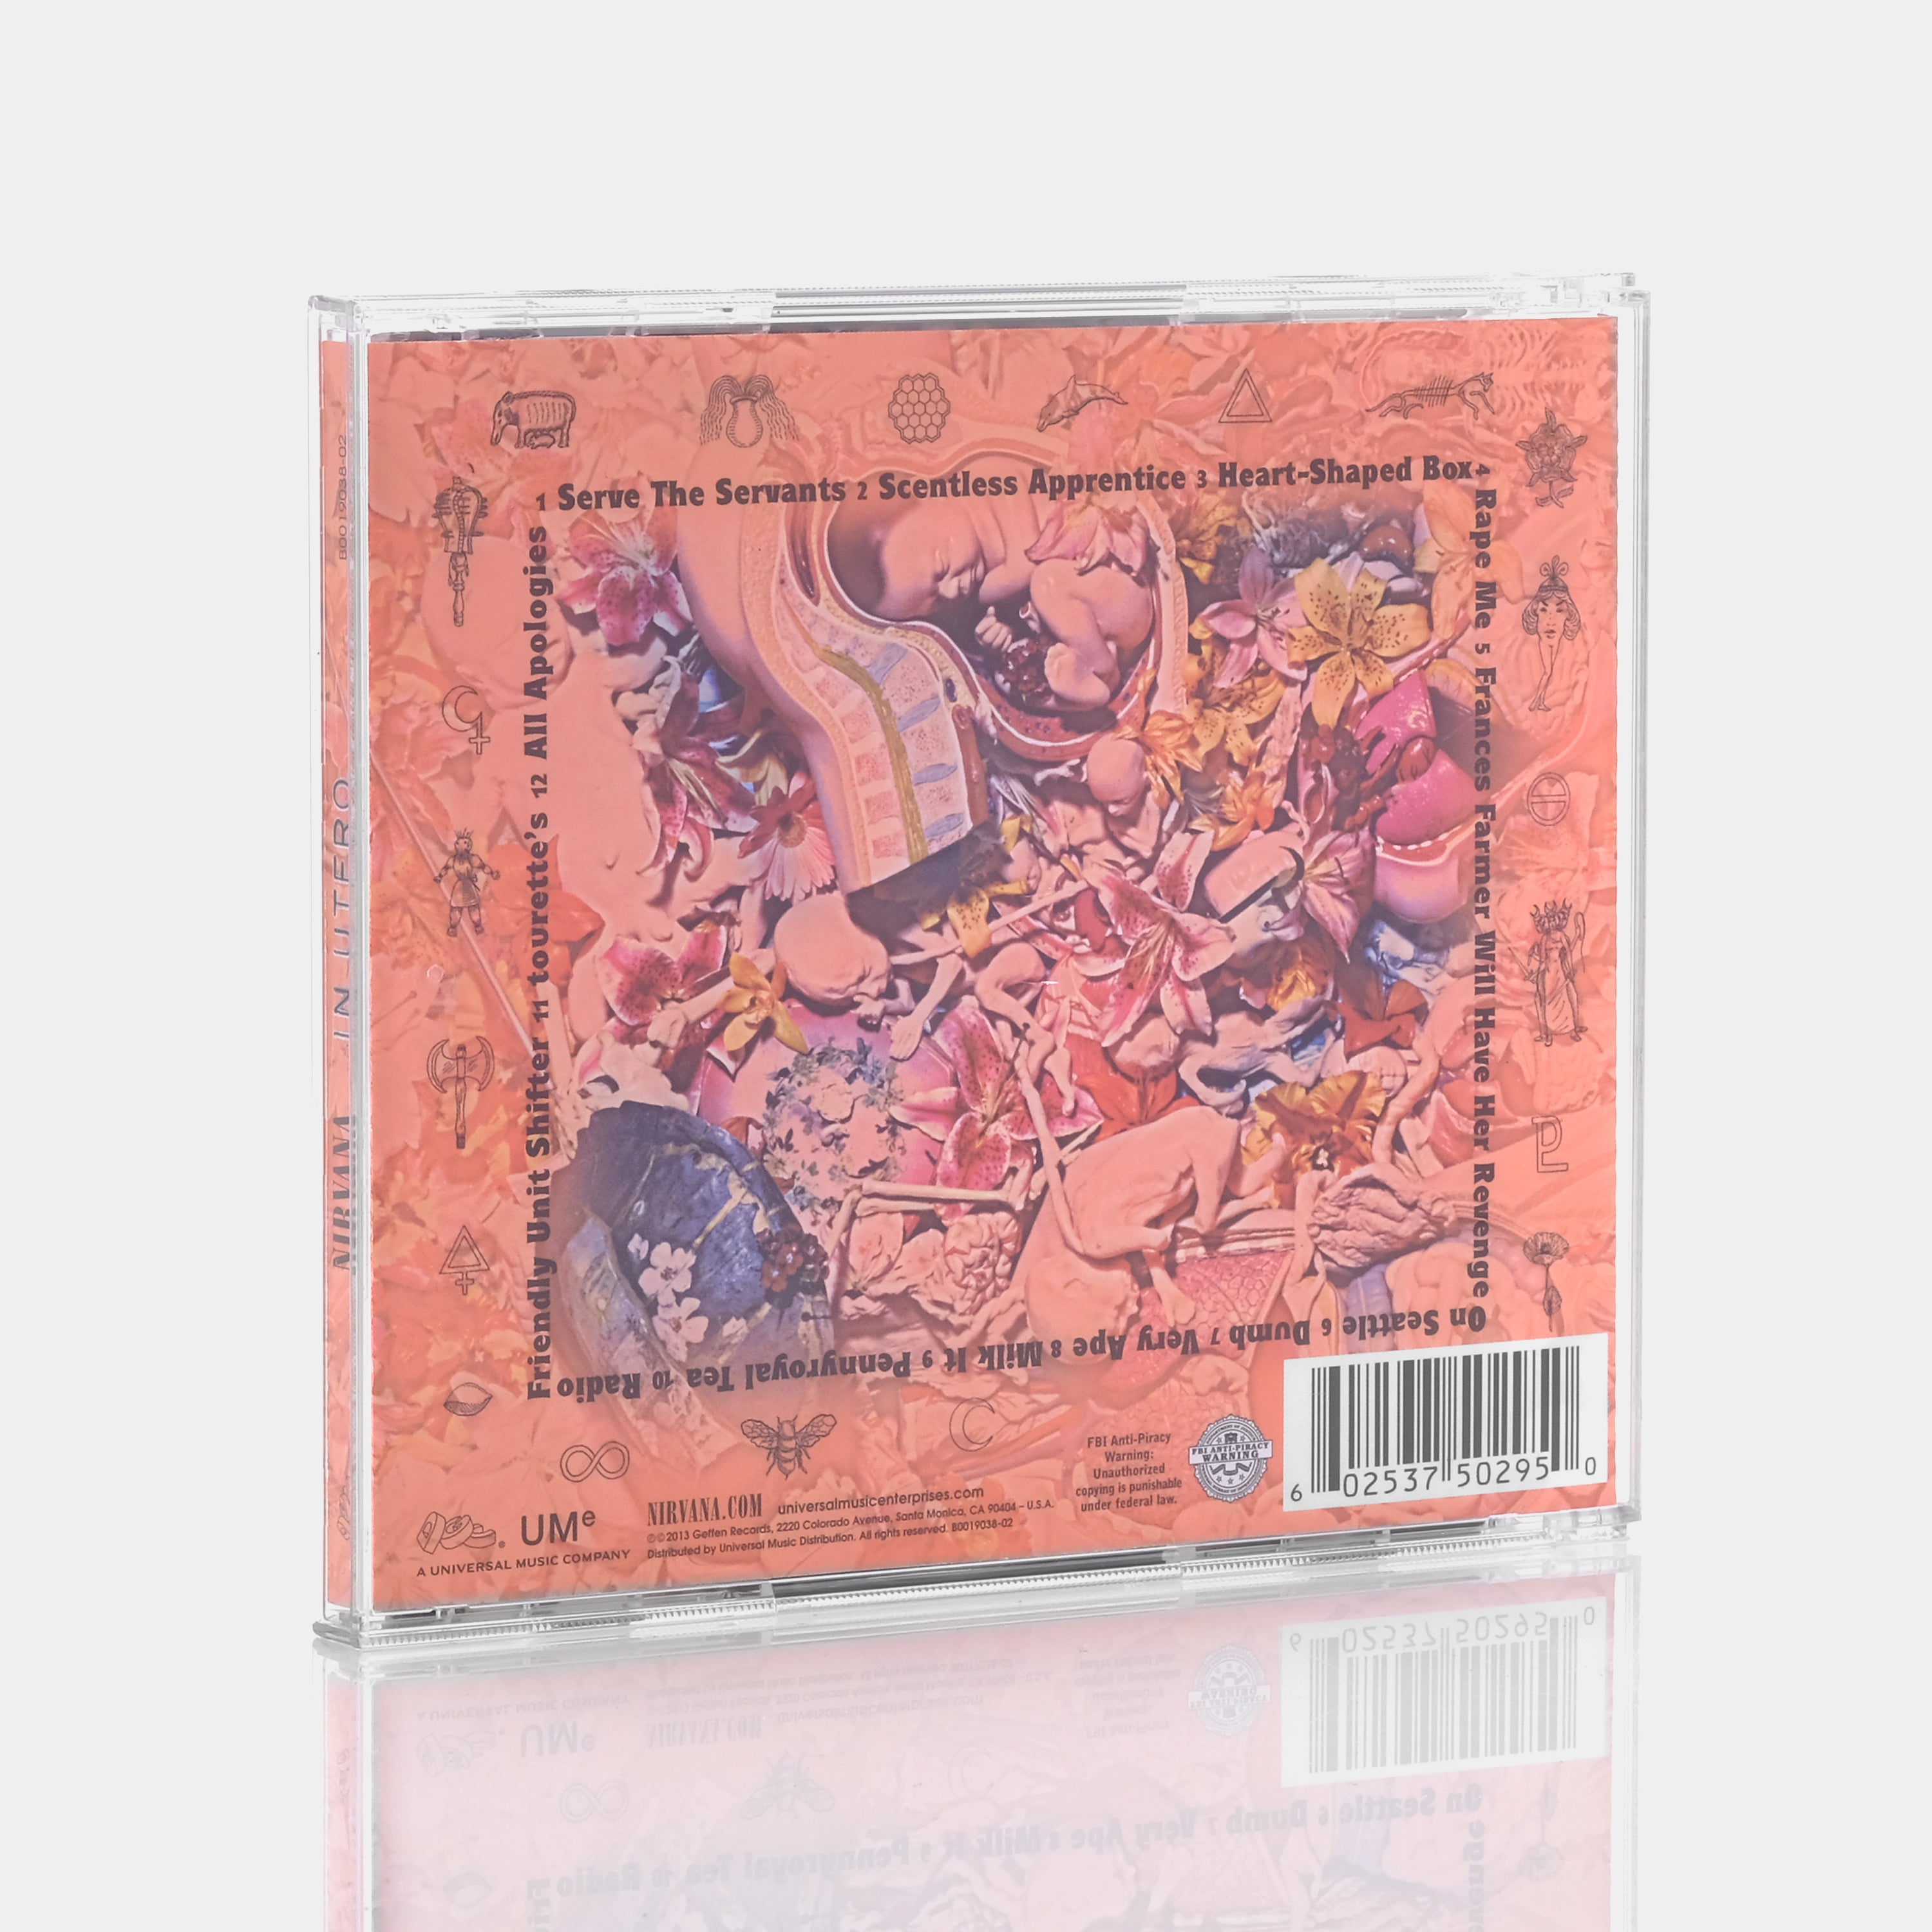 Nirvana - In Utero CD